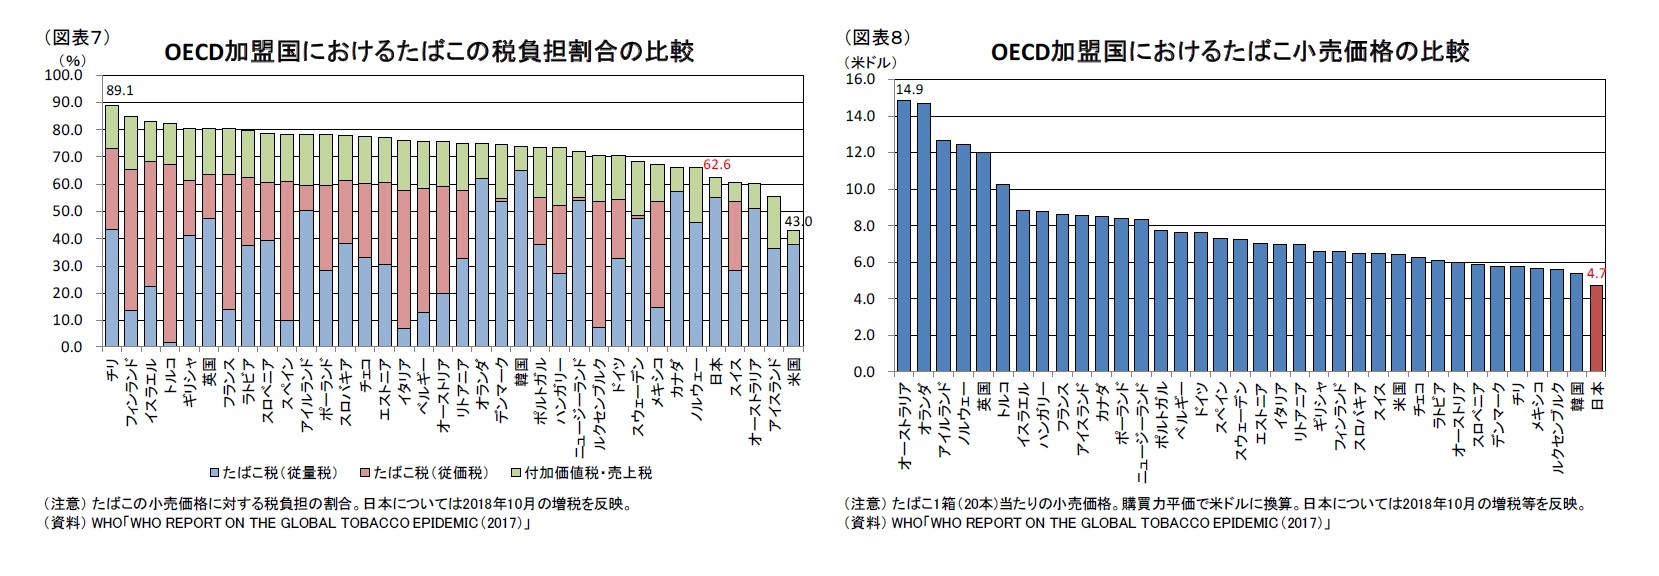 （図表７）OECD加盟国におけるたばこの税負担割合の比較/（図表８）OECD加盟国におけるたばこ小売価格の比較